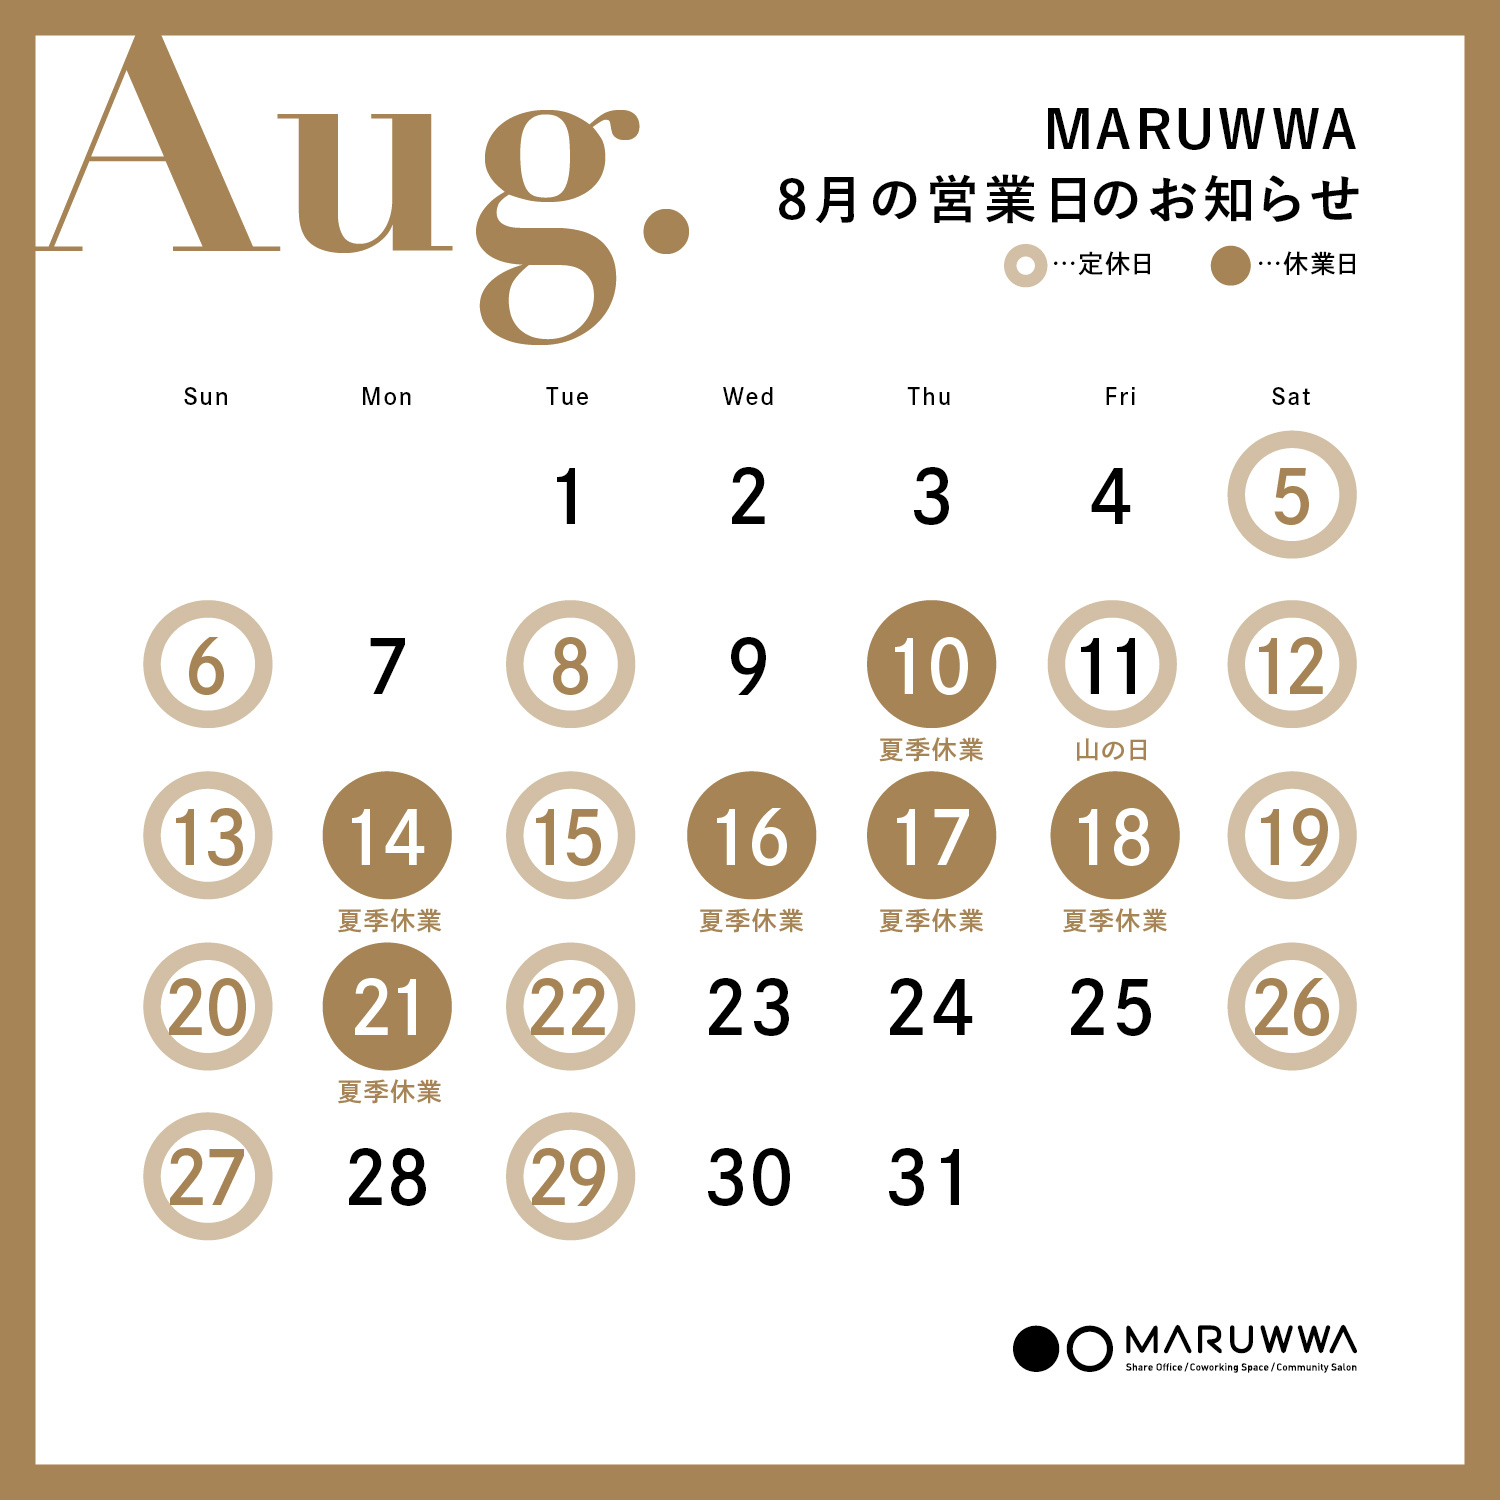 MARUWWA 8月の営業日